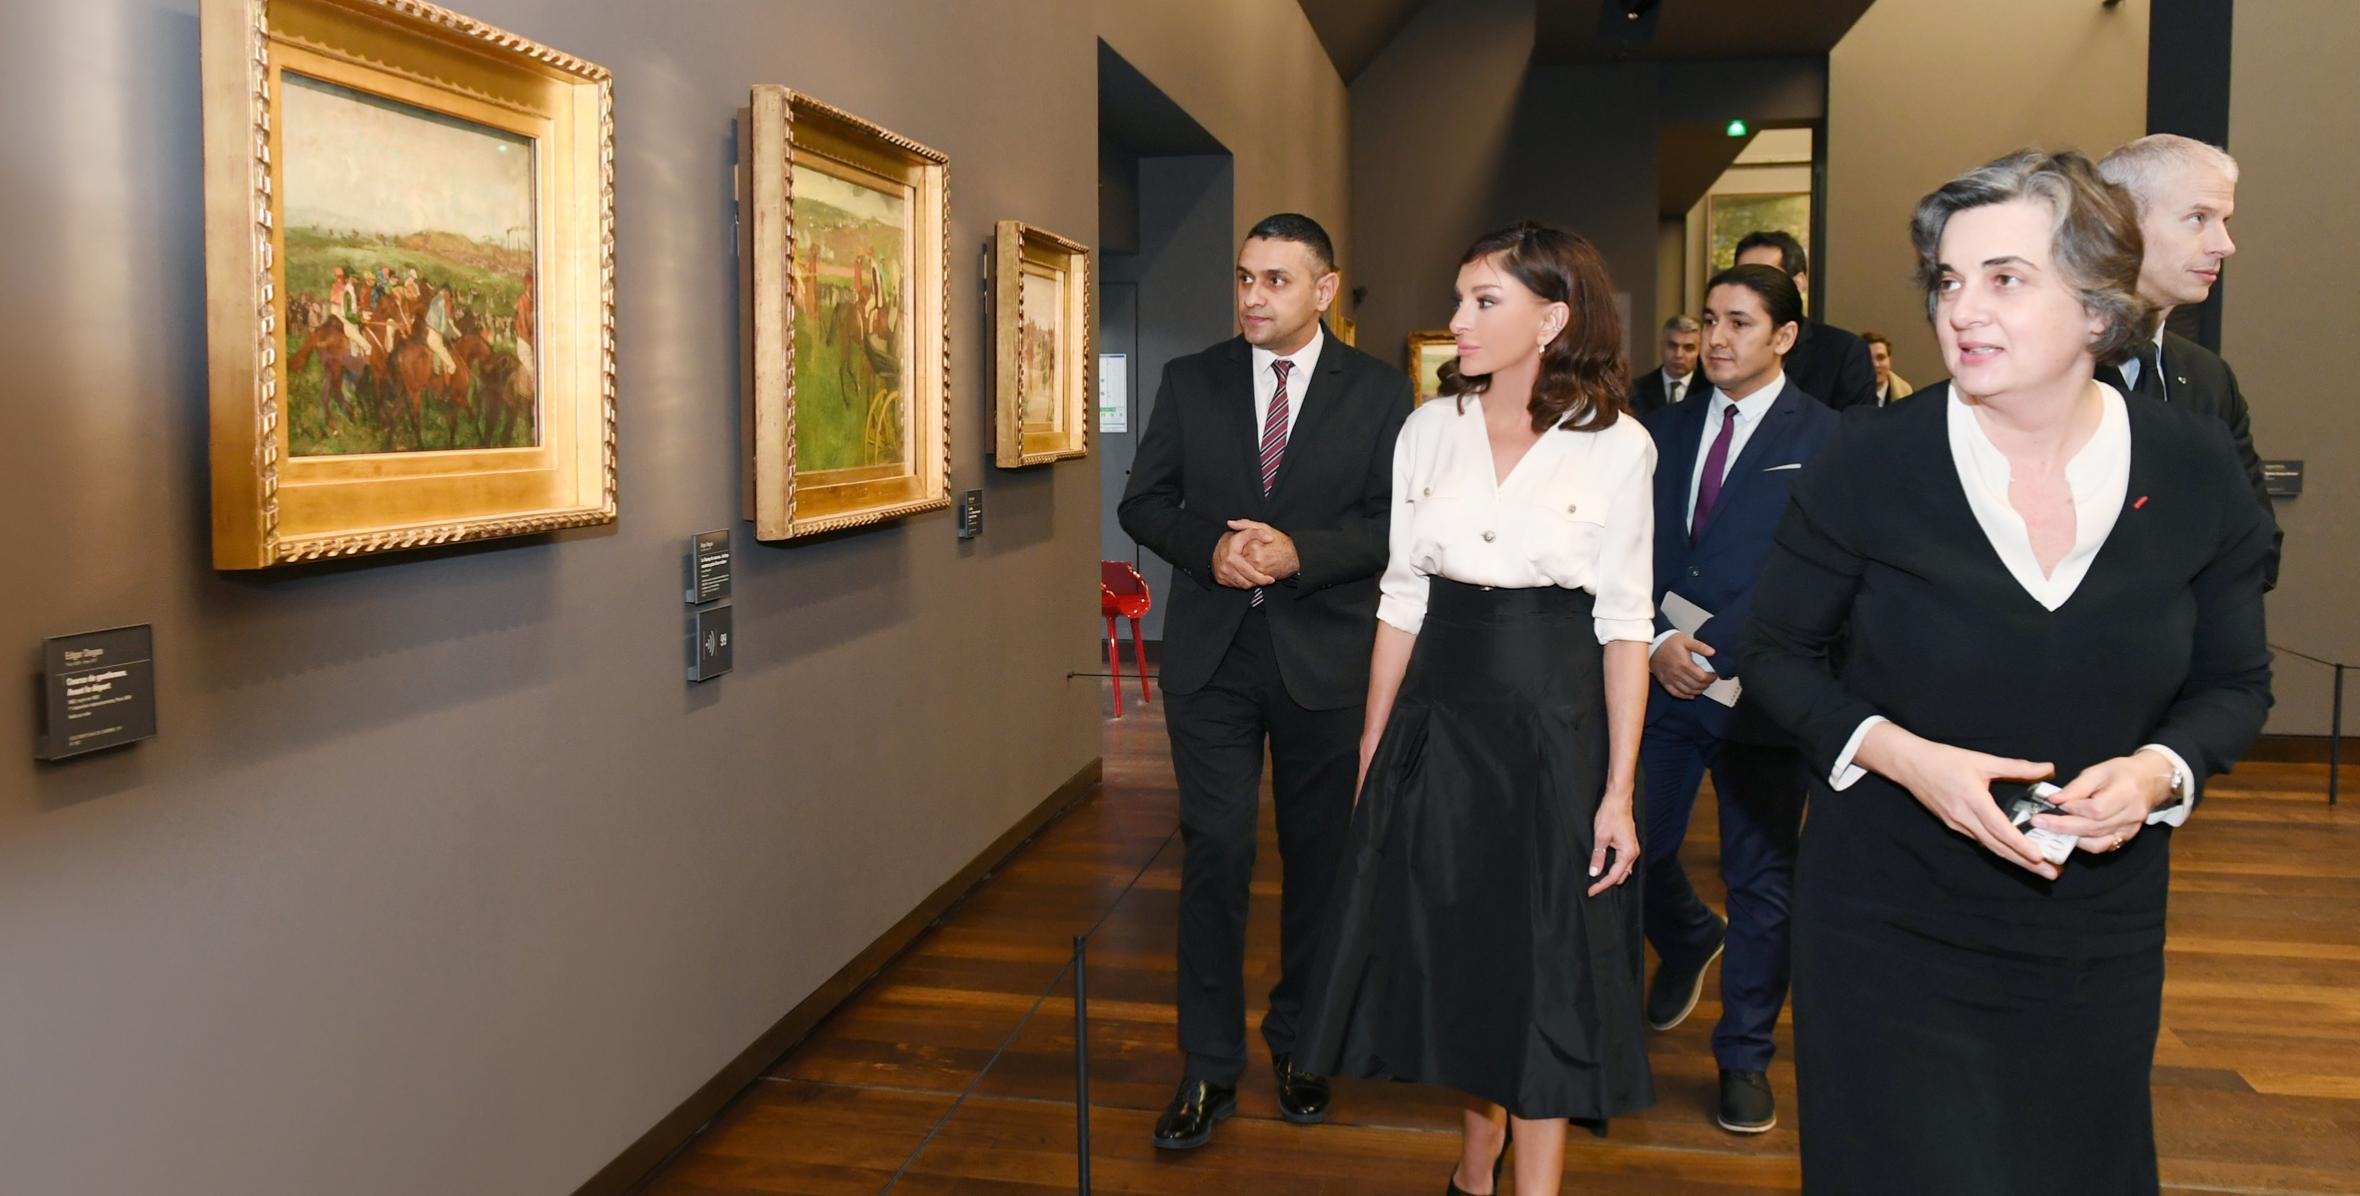 Первый вице-президент Мехрибан Алиева в сопровождении министра культуры Франции Франка Ристера посетила парижский Музей д’Орсе